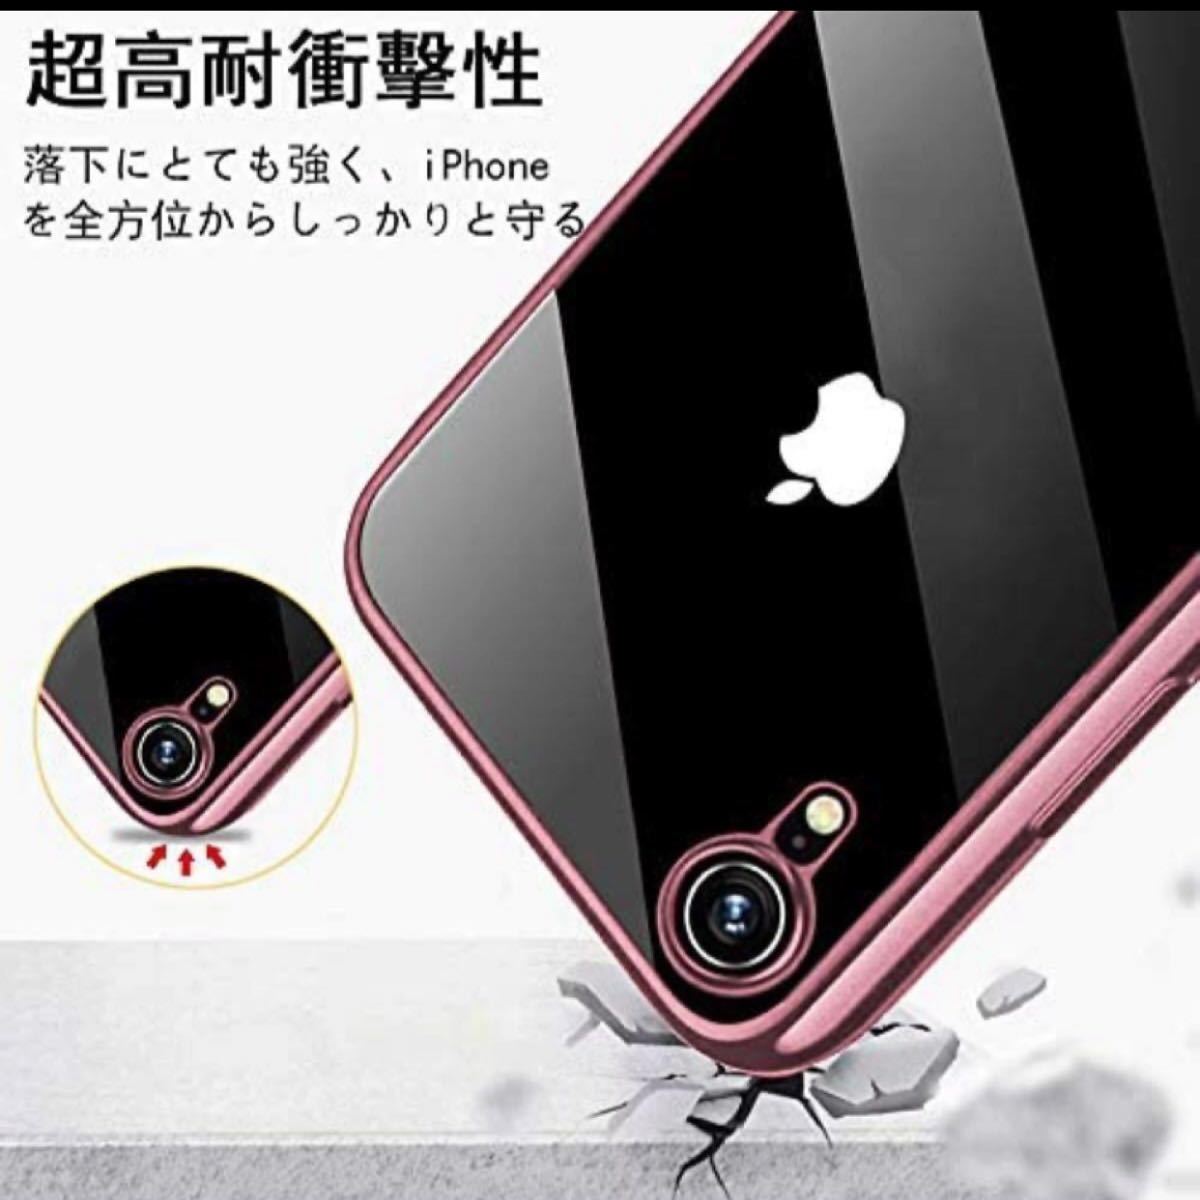 【対応機種】iPhone XR スマートフォン専用保護カバー ケース(ピンク)